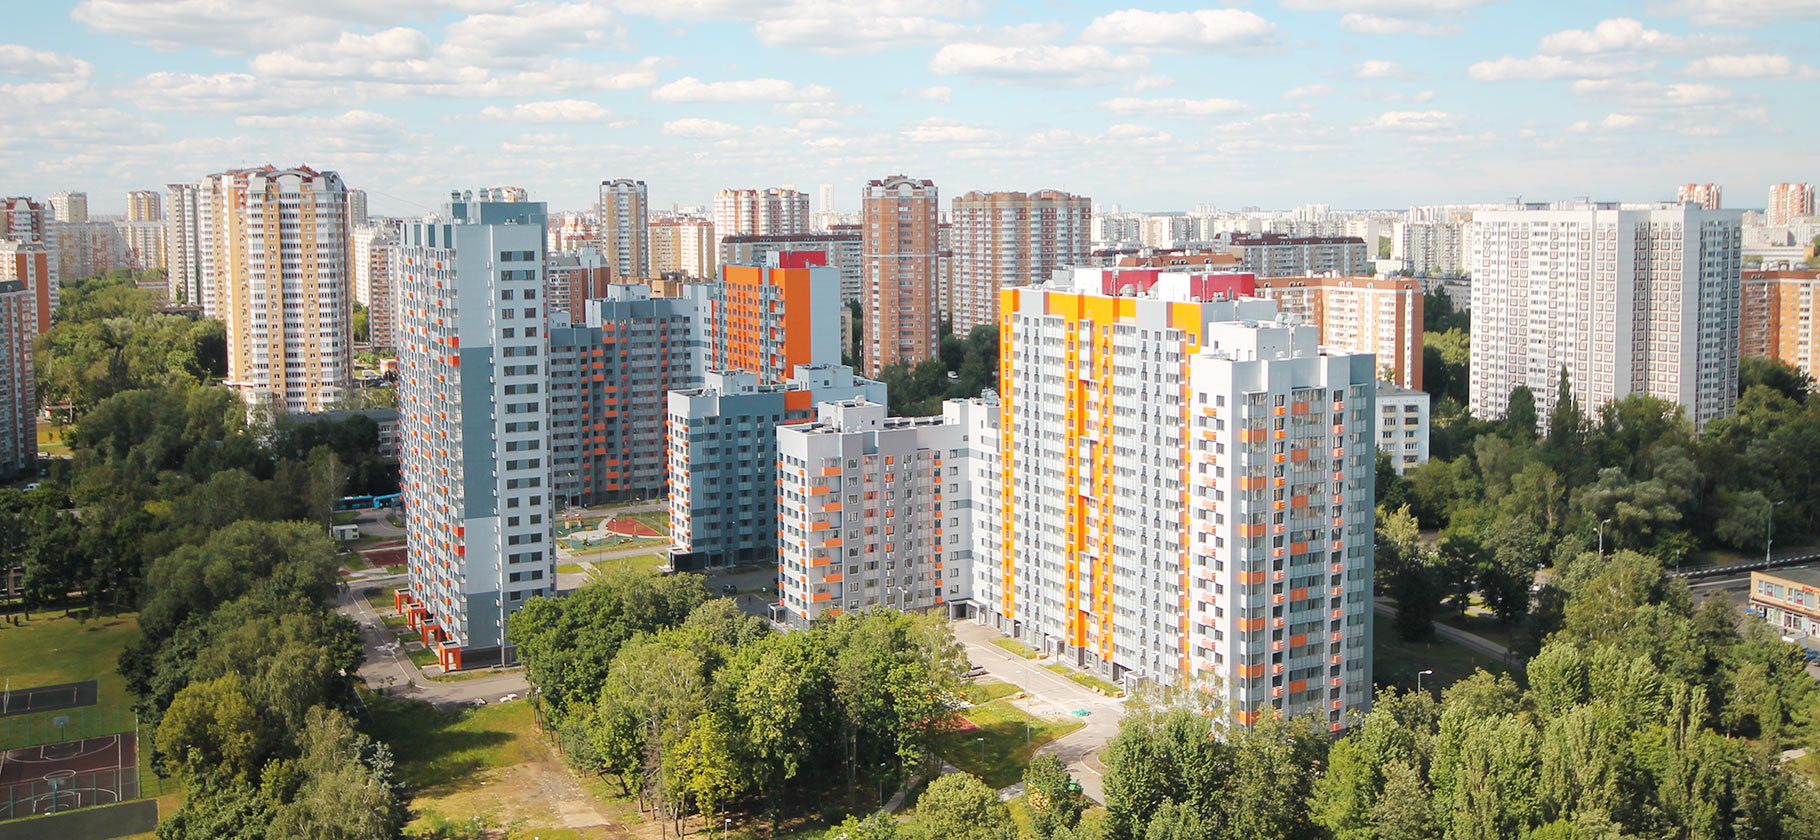 Аренда жилья в Москве: как защититься от недобросовестных арендодателей